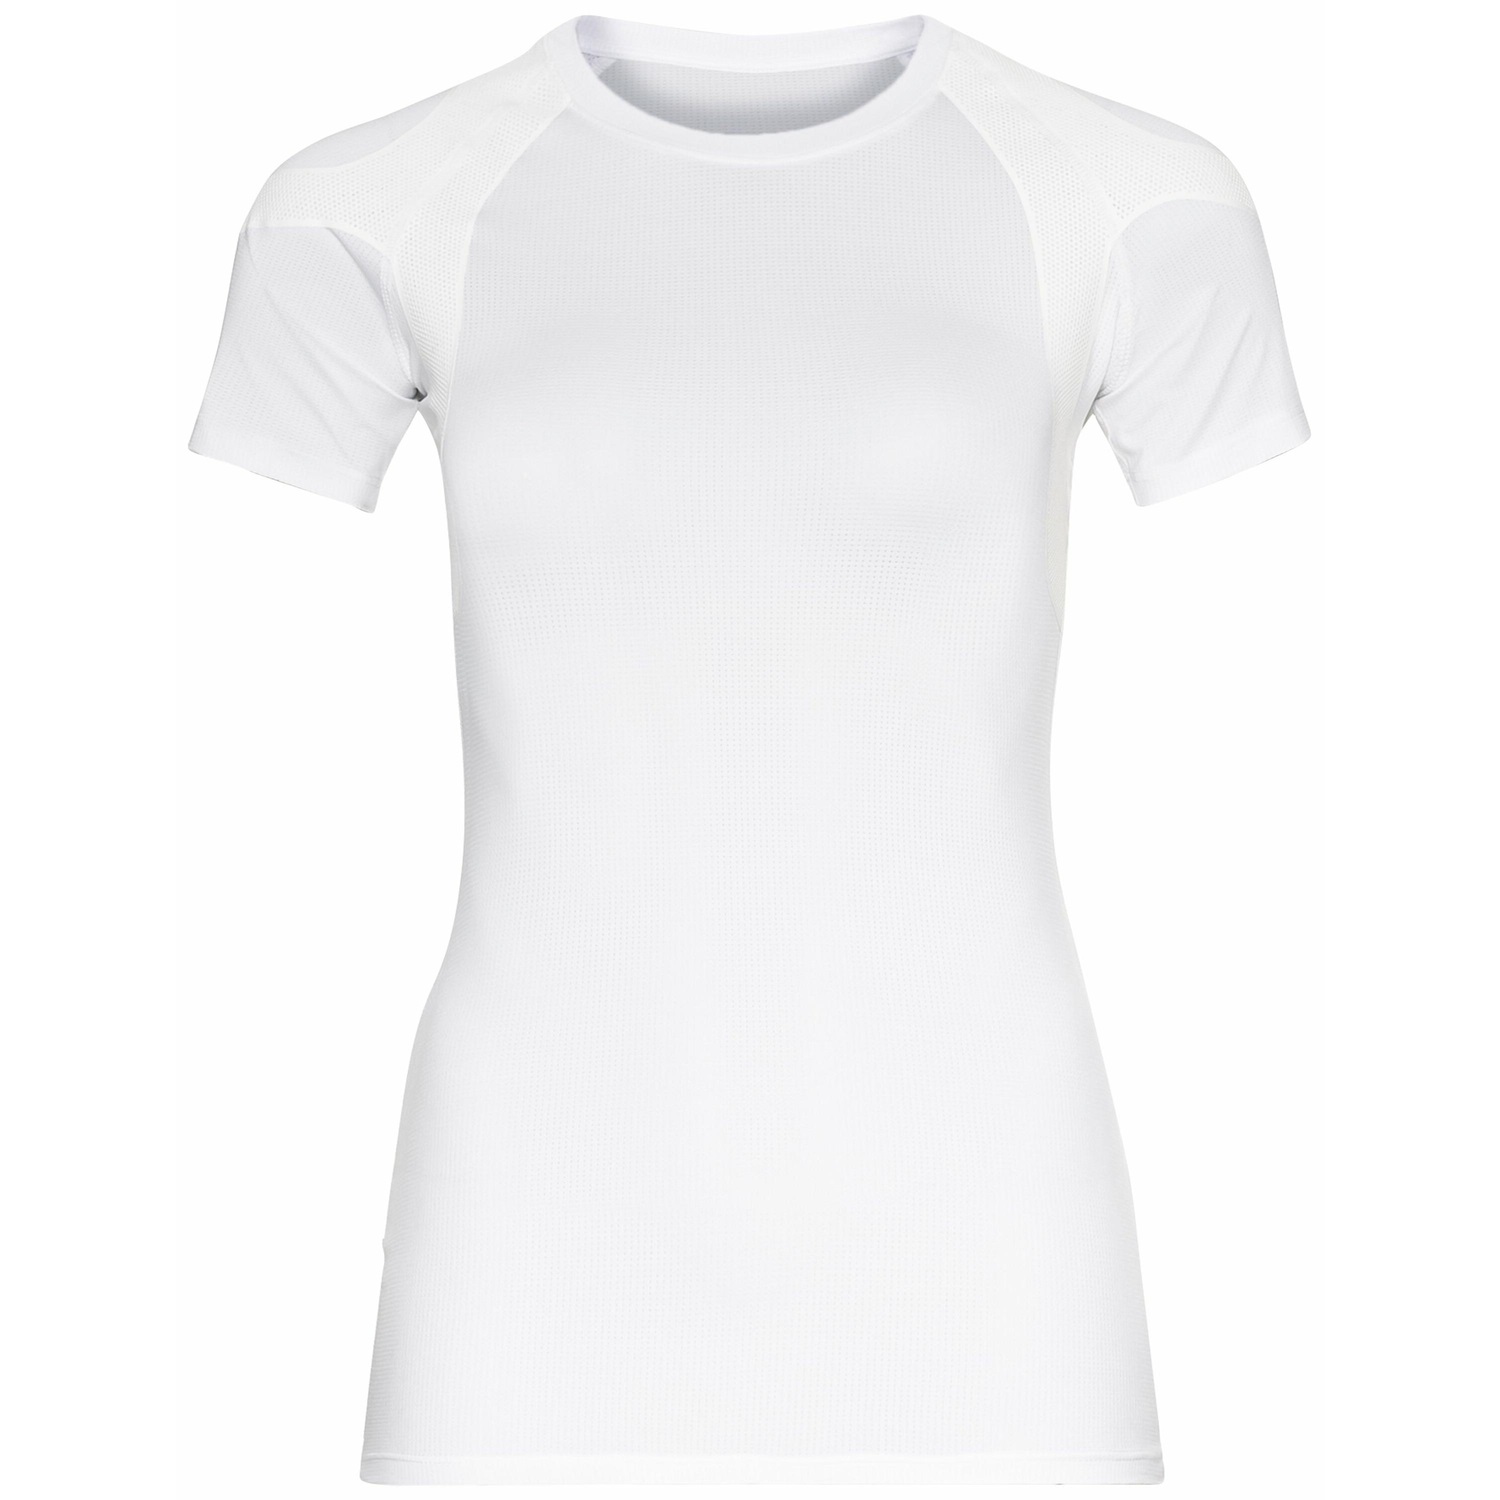 Produktbild von Odlo Active Spine 2.0 Laufshirt Damen - weiß